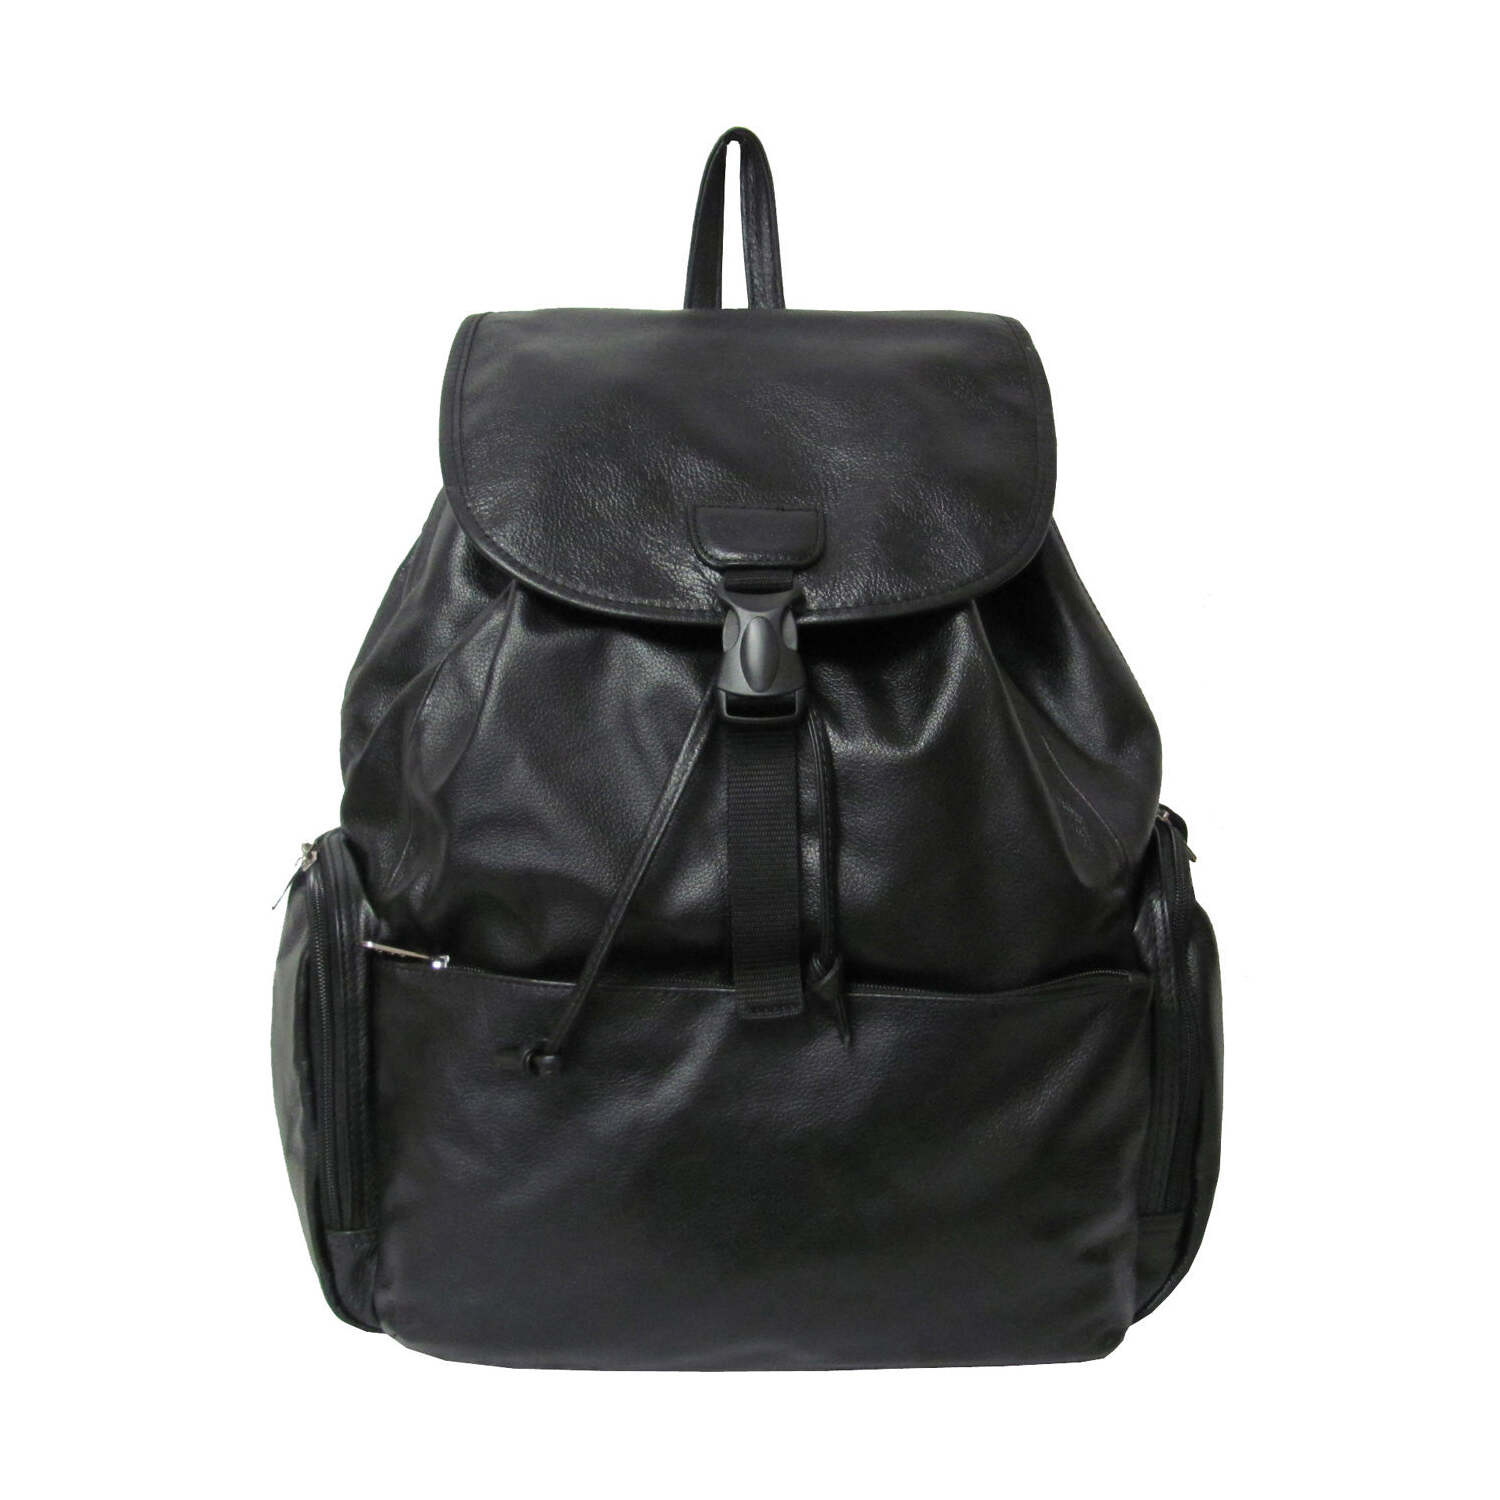 AmeriLeather Jumbo Leather Backpack - image 4 of 7